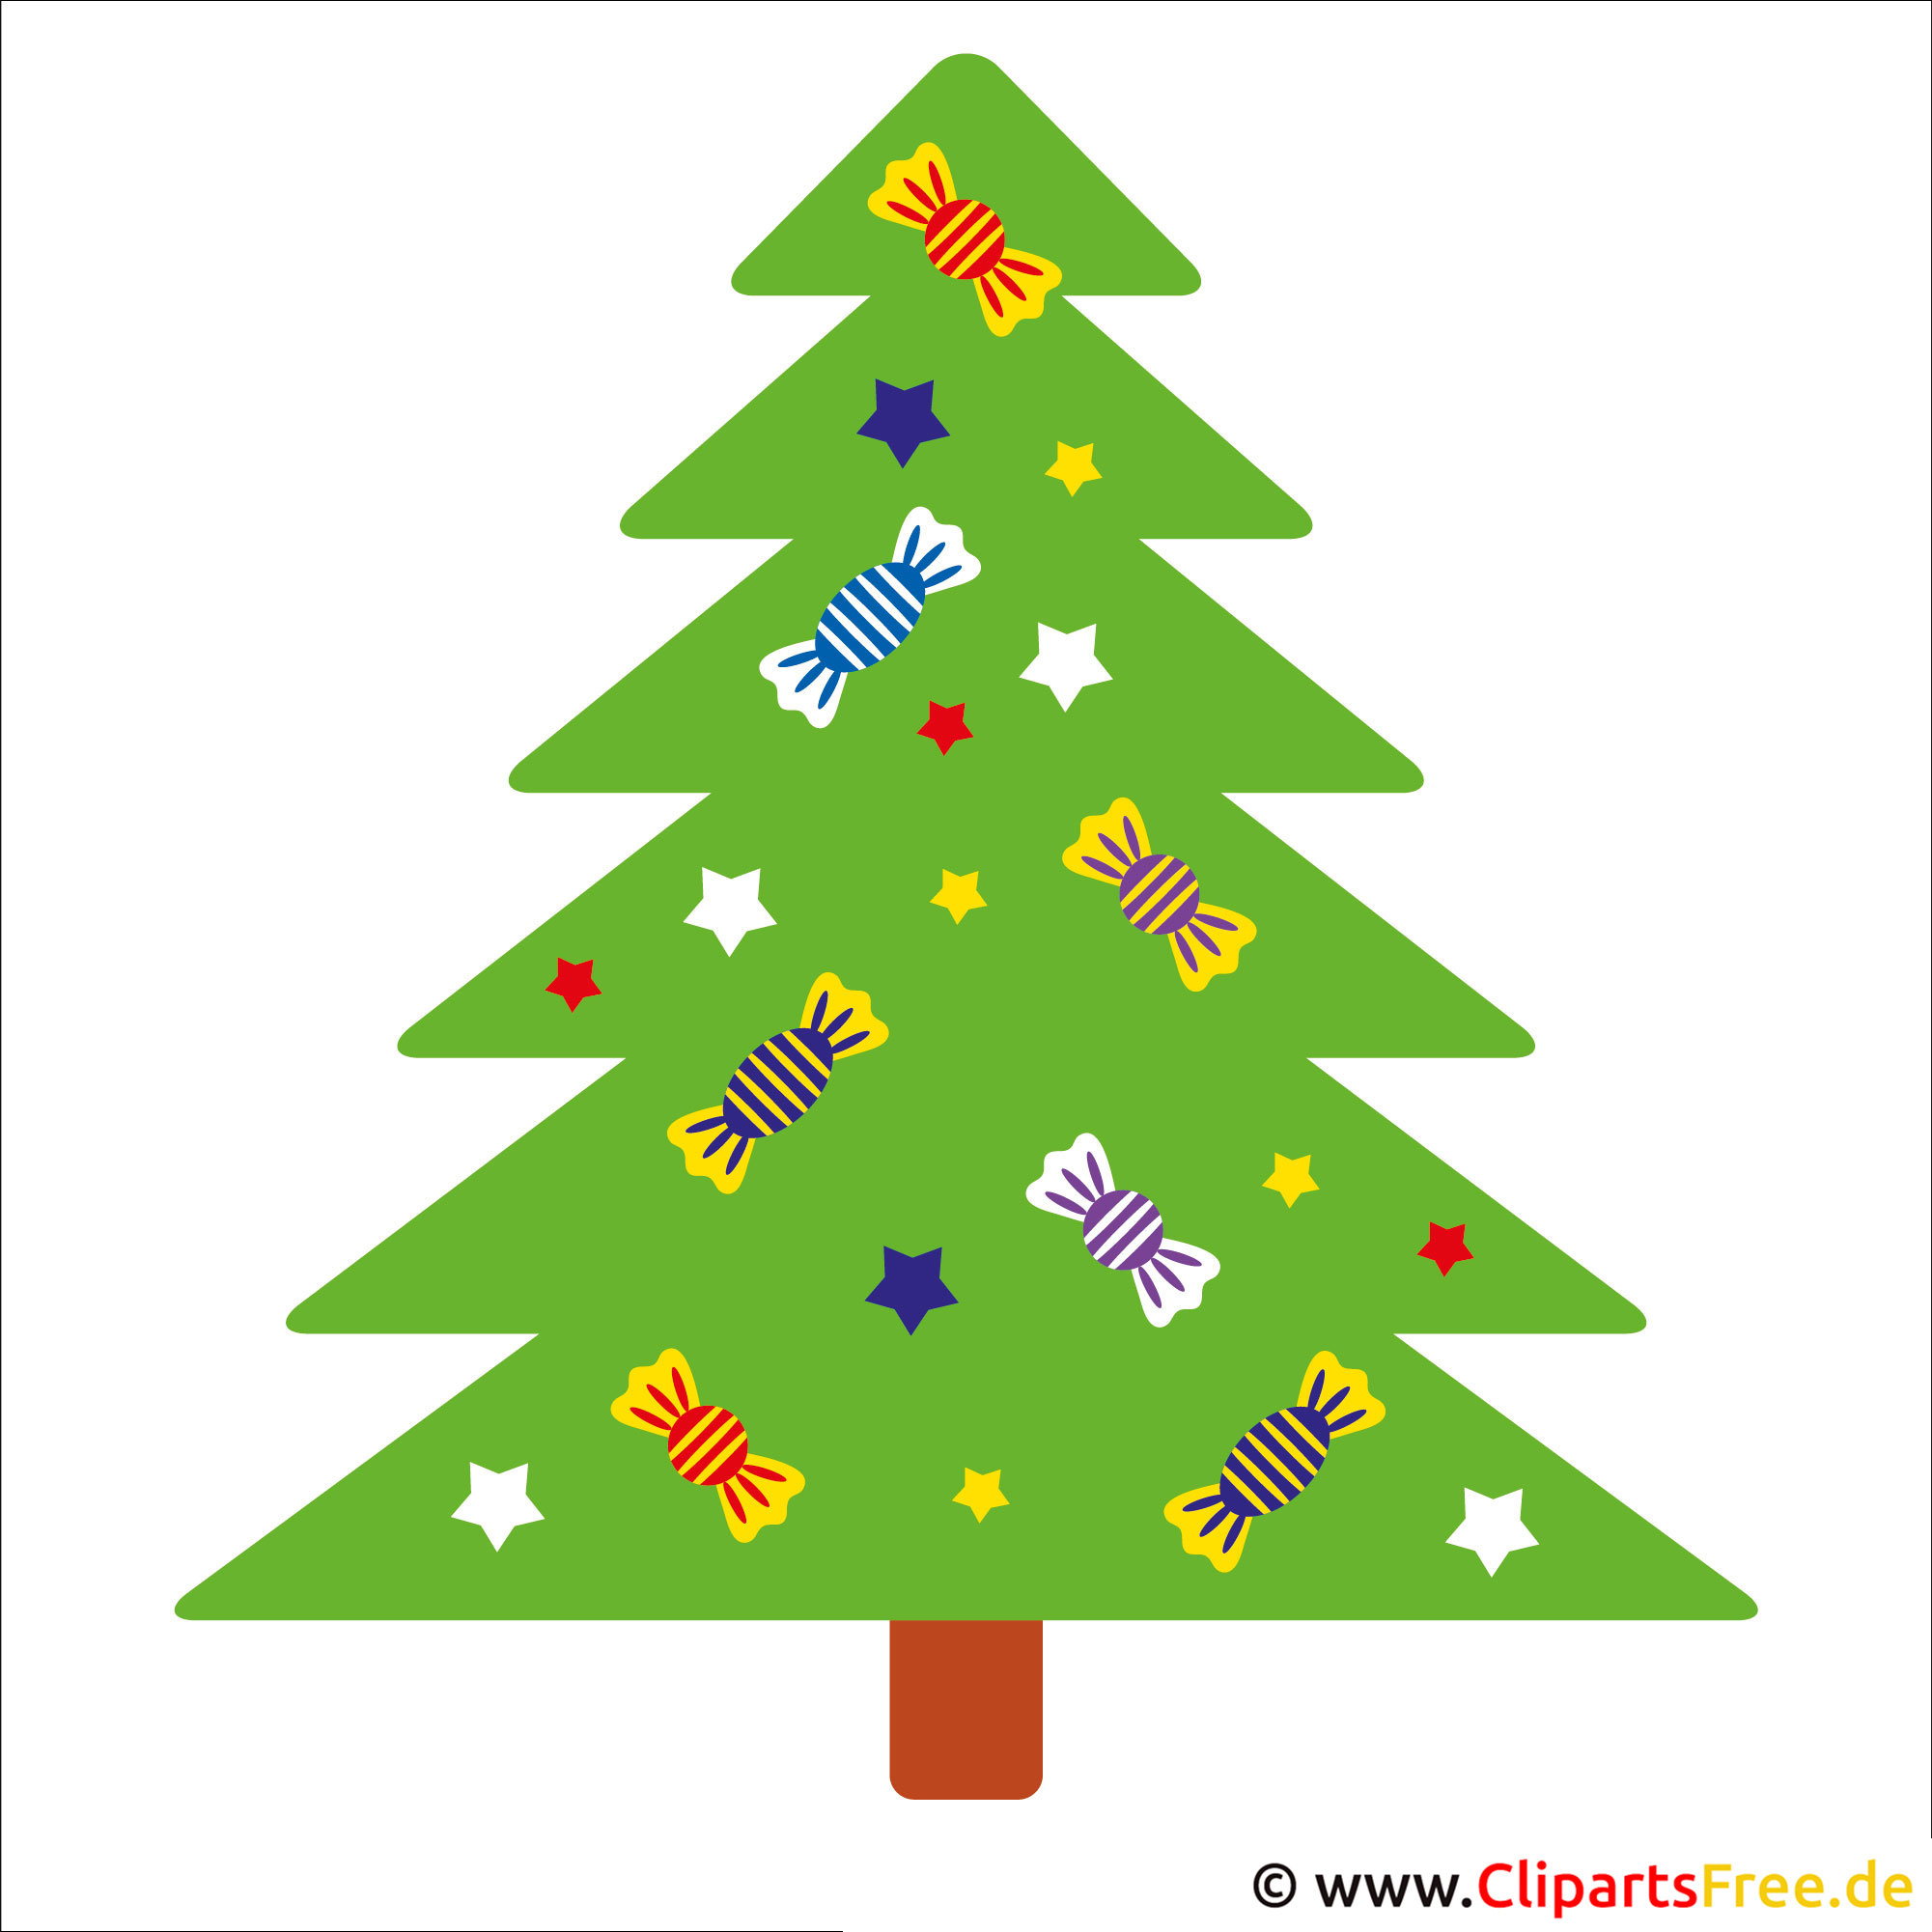 clipart weihnachten download kostenlos - photo #31